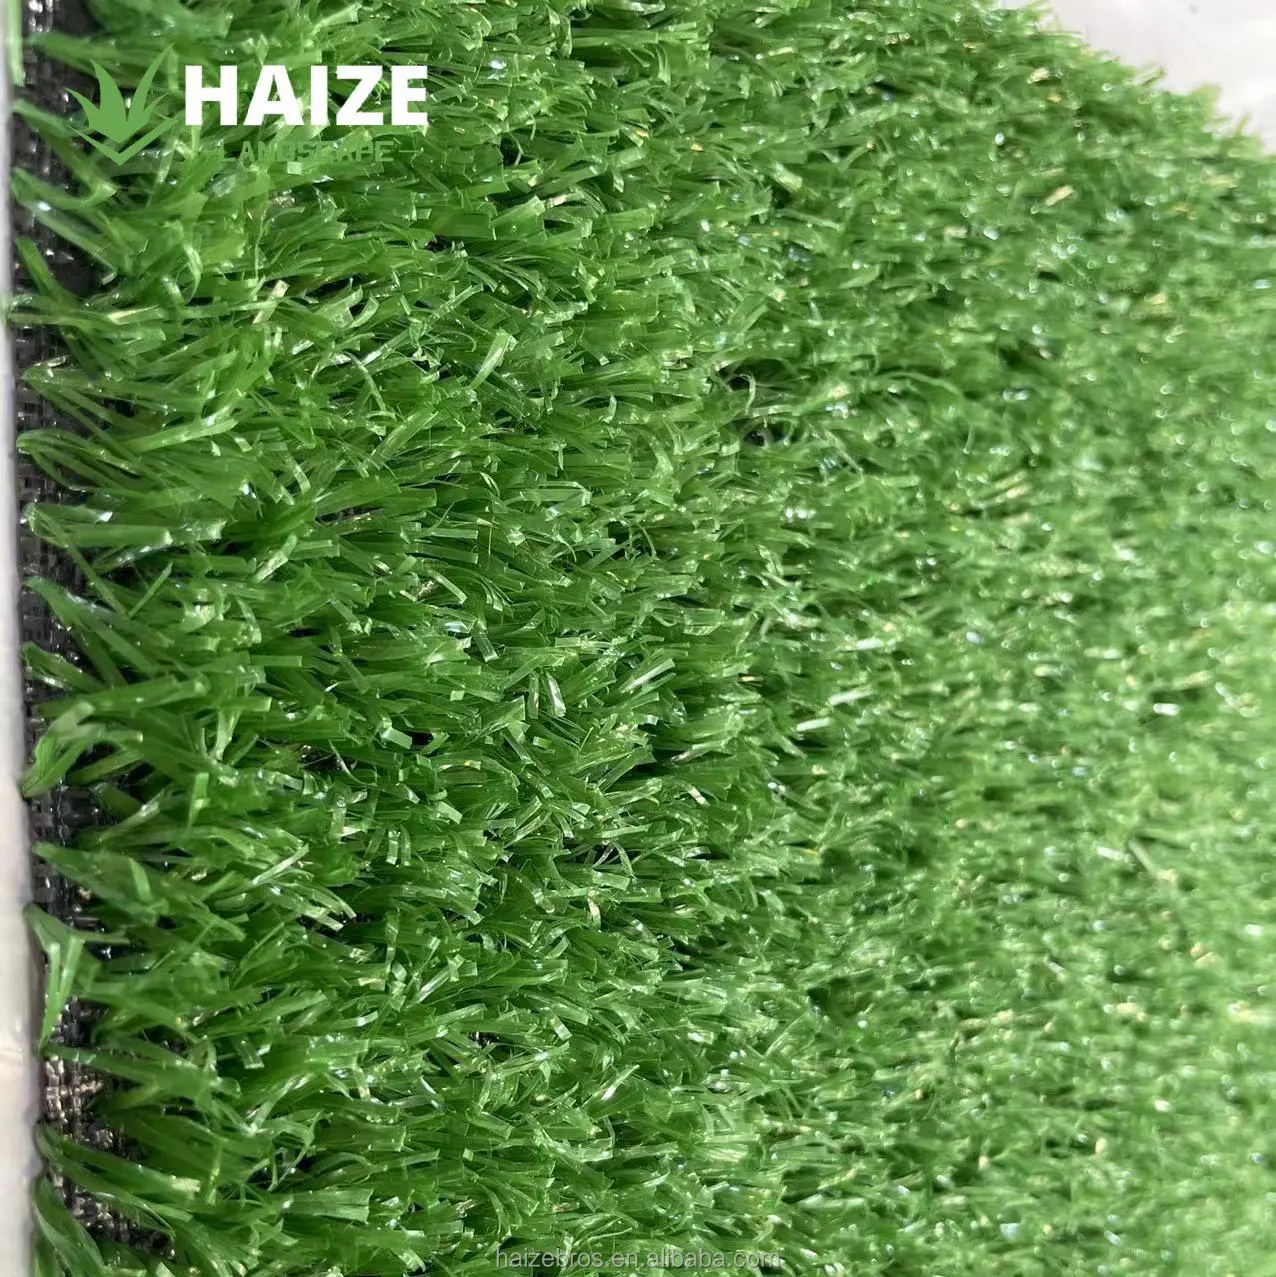 بكرة سجاد من العشب الاصطناعي الأخضر بسعر رخيص للبيع بالجملة من HAIZE في الصين